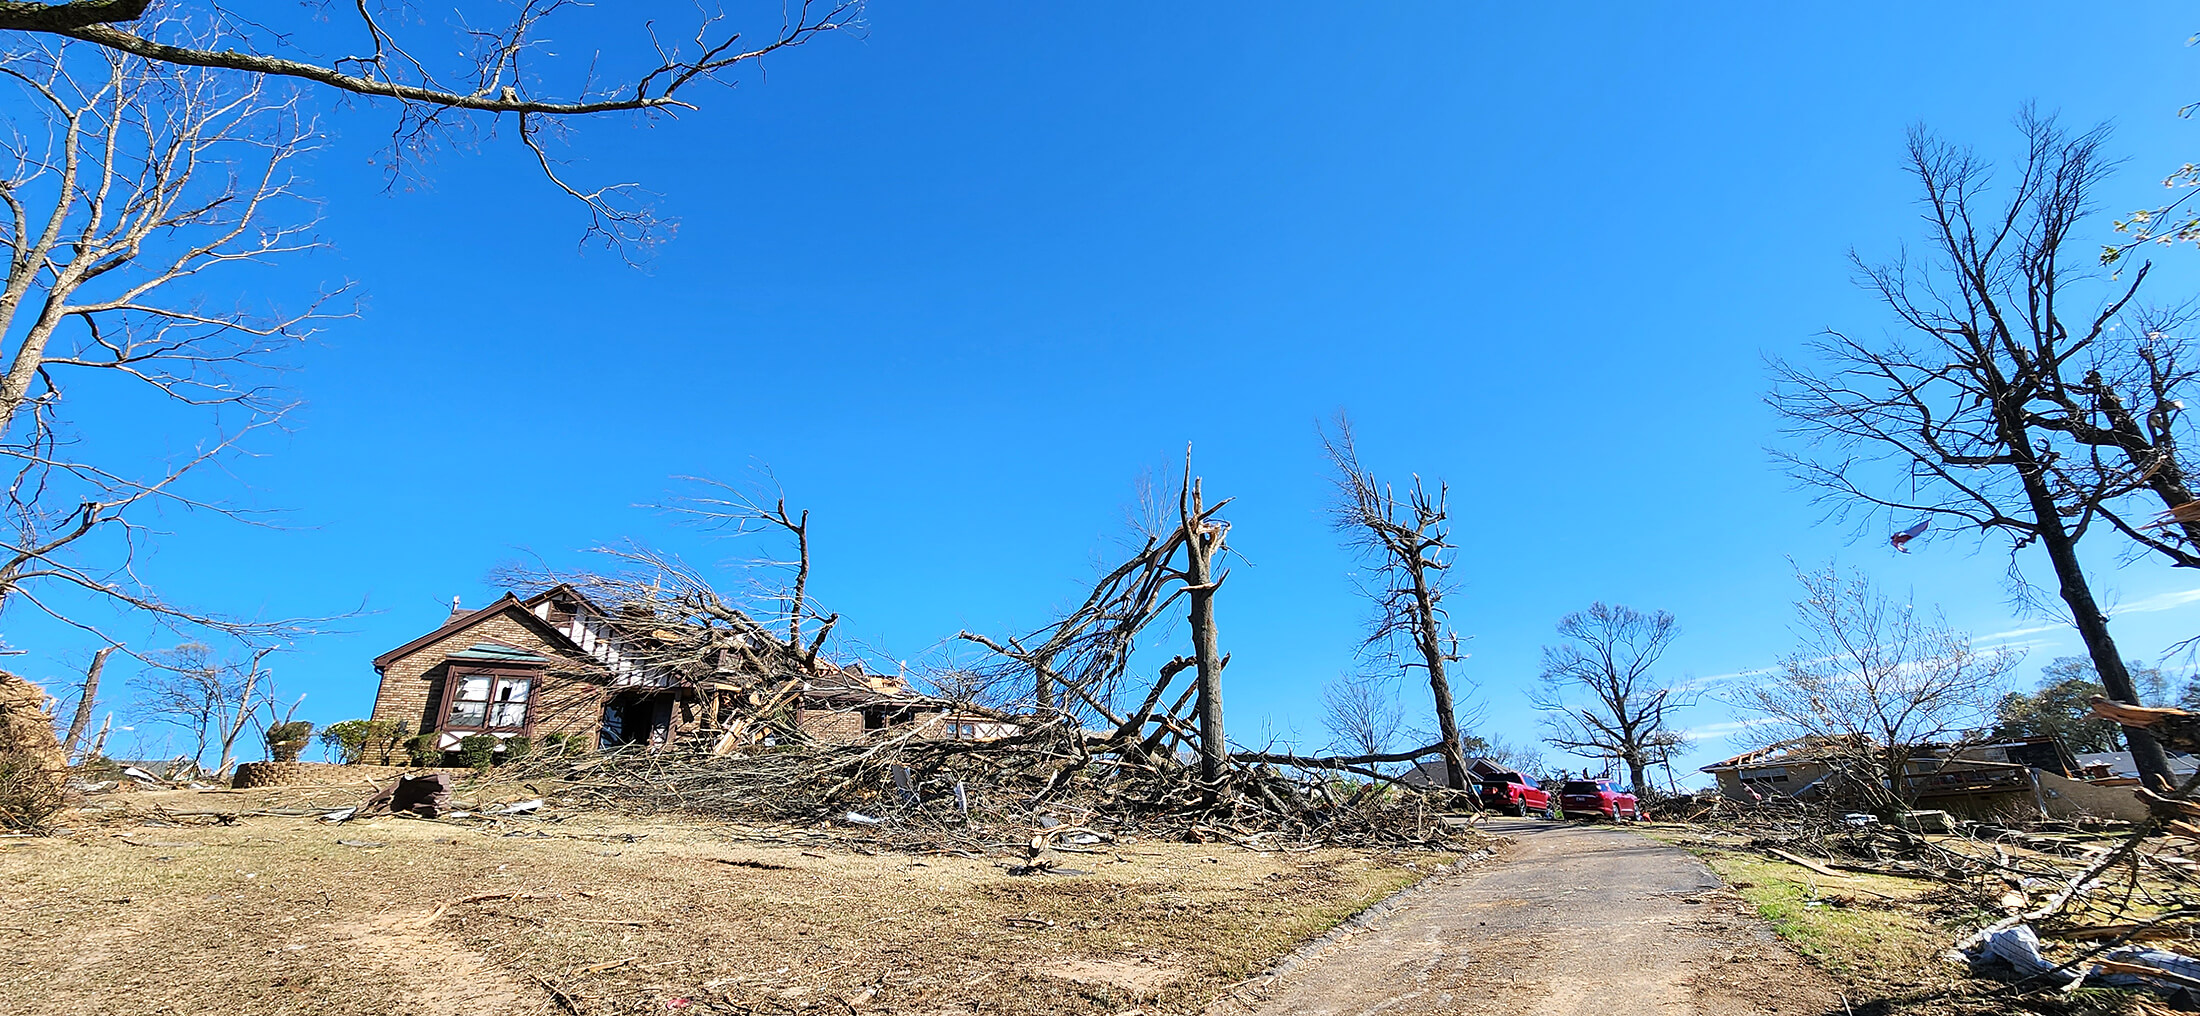 Tornado damage in Wynne, Arkansas.